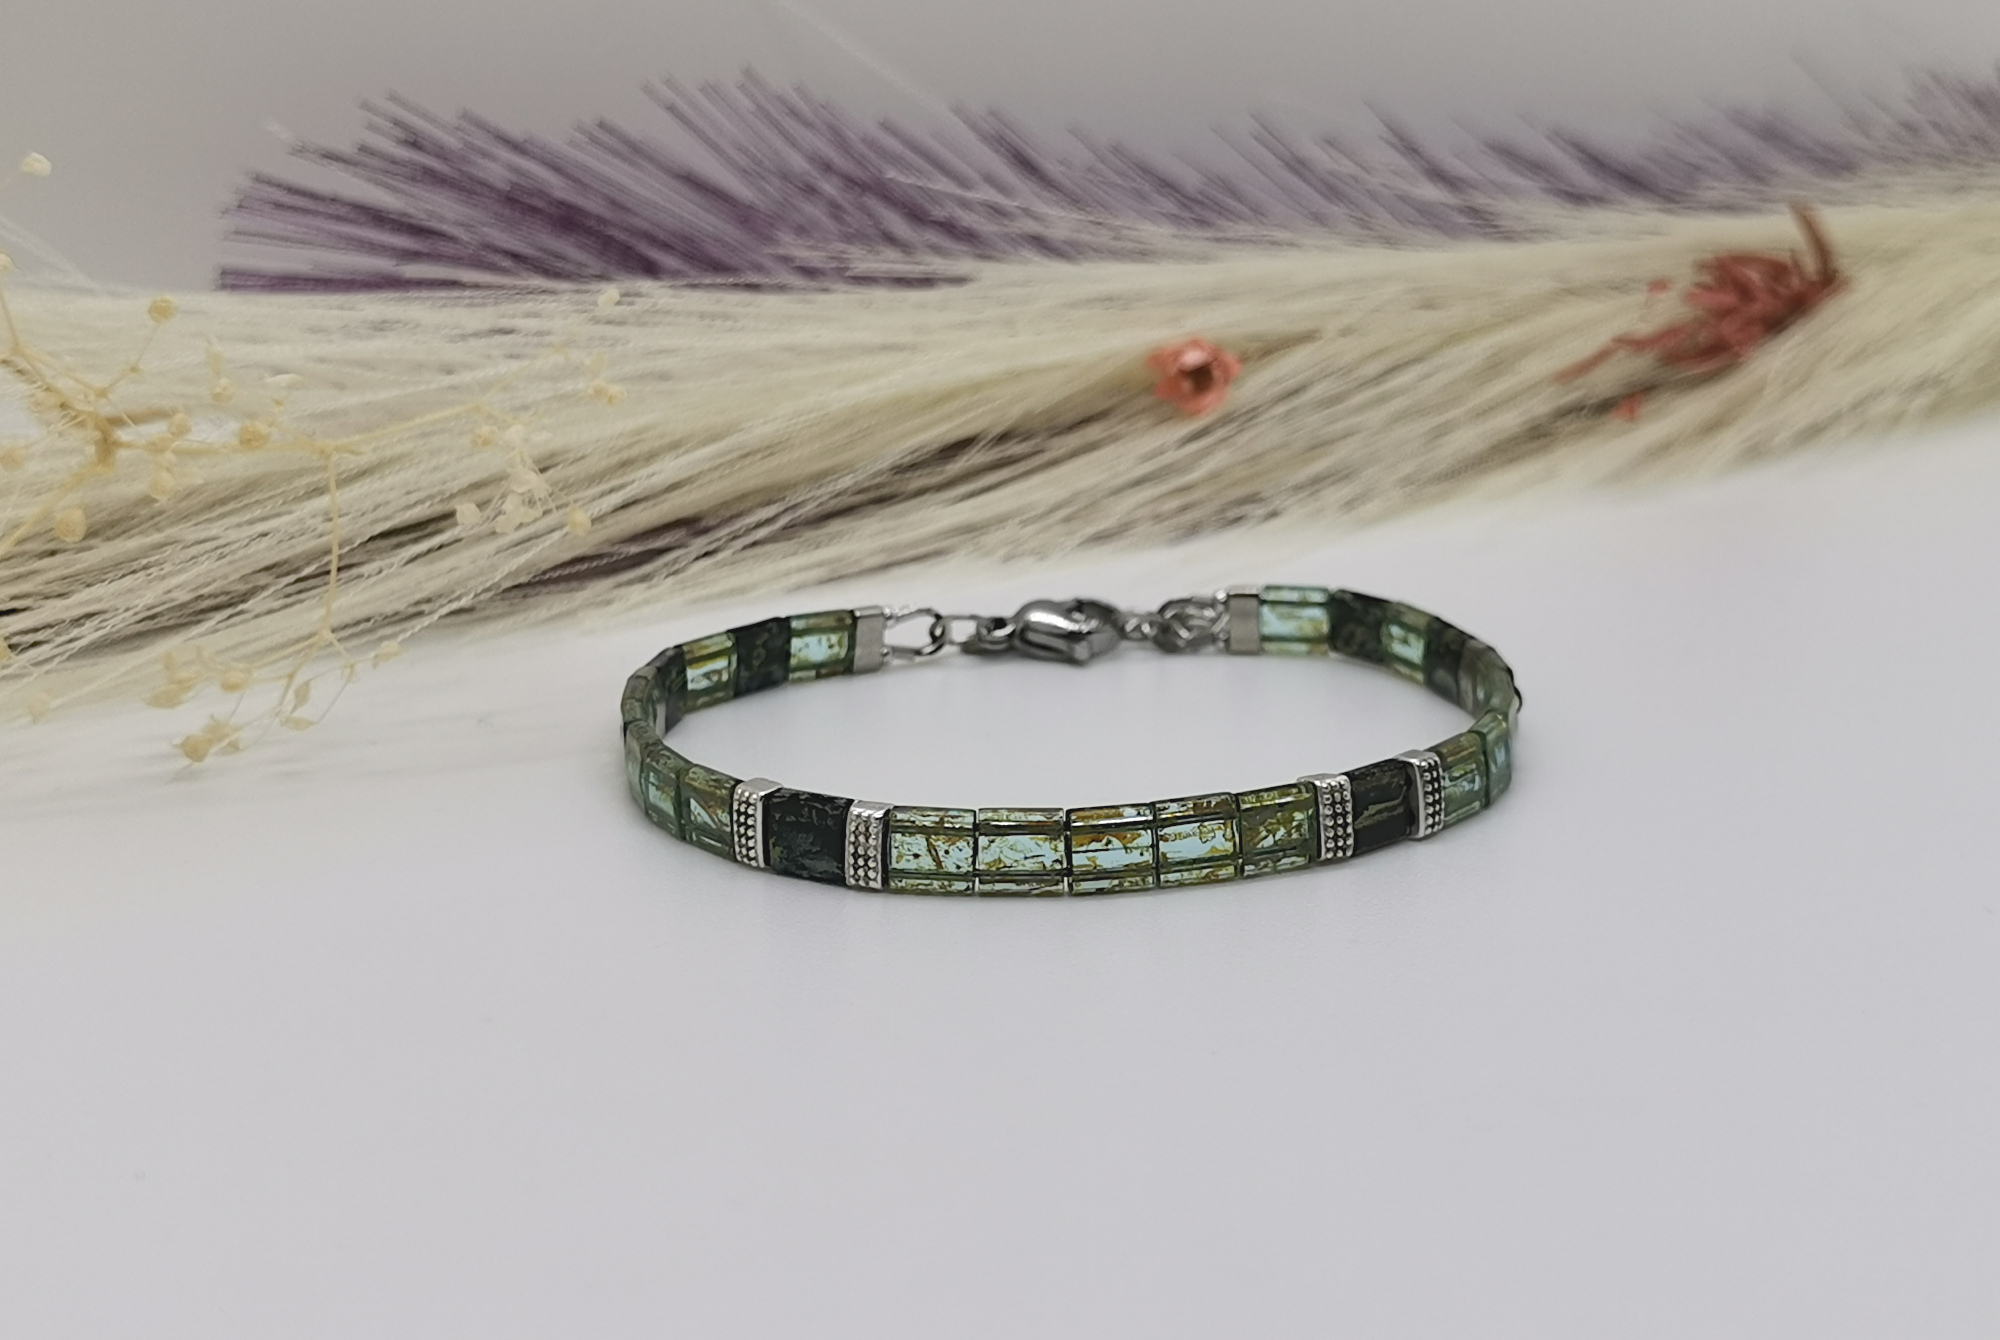 Bracelet Tiphen vert clair pour femme. Perles carrées Tila Miyuki coloris Transparent Sea Foam Picasso